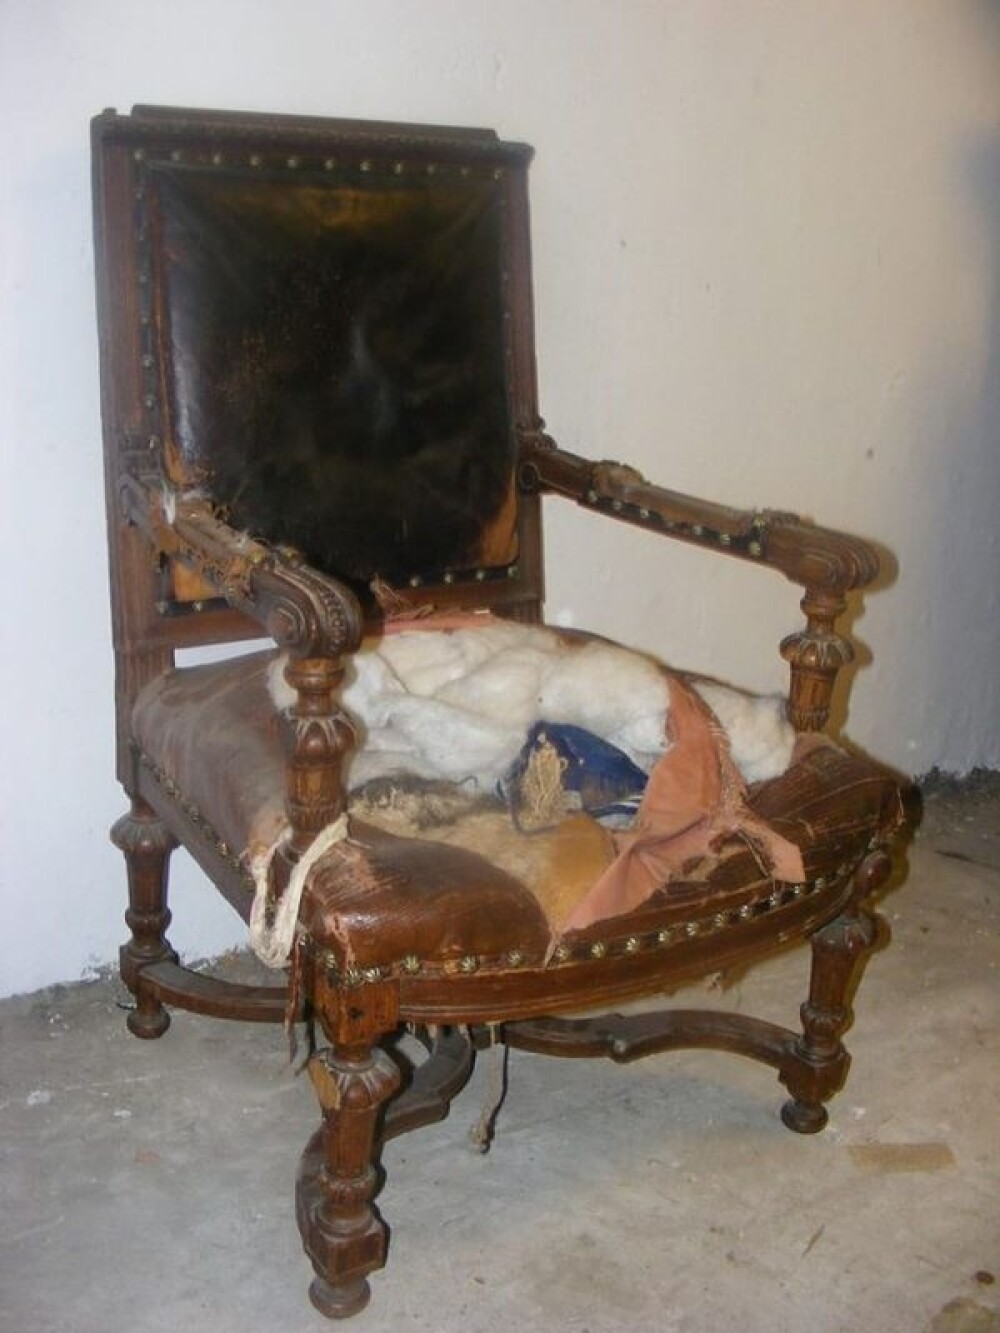 Un restaurator din Rusia a descoperit o adevarata comoara intr-un scaun. FOTO - Imaginea 1